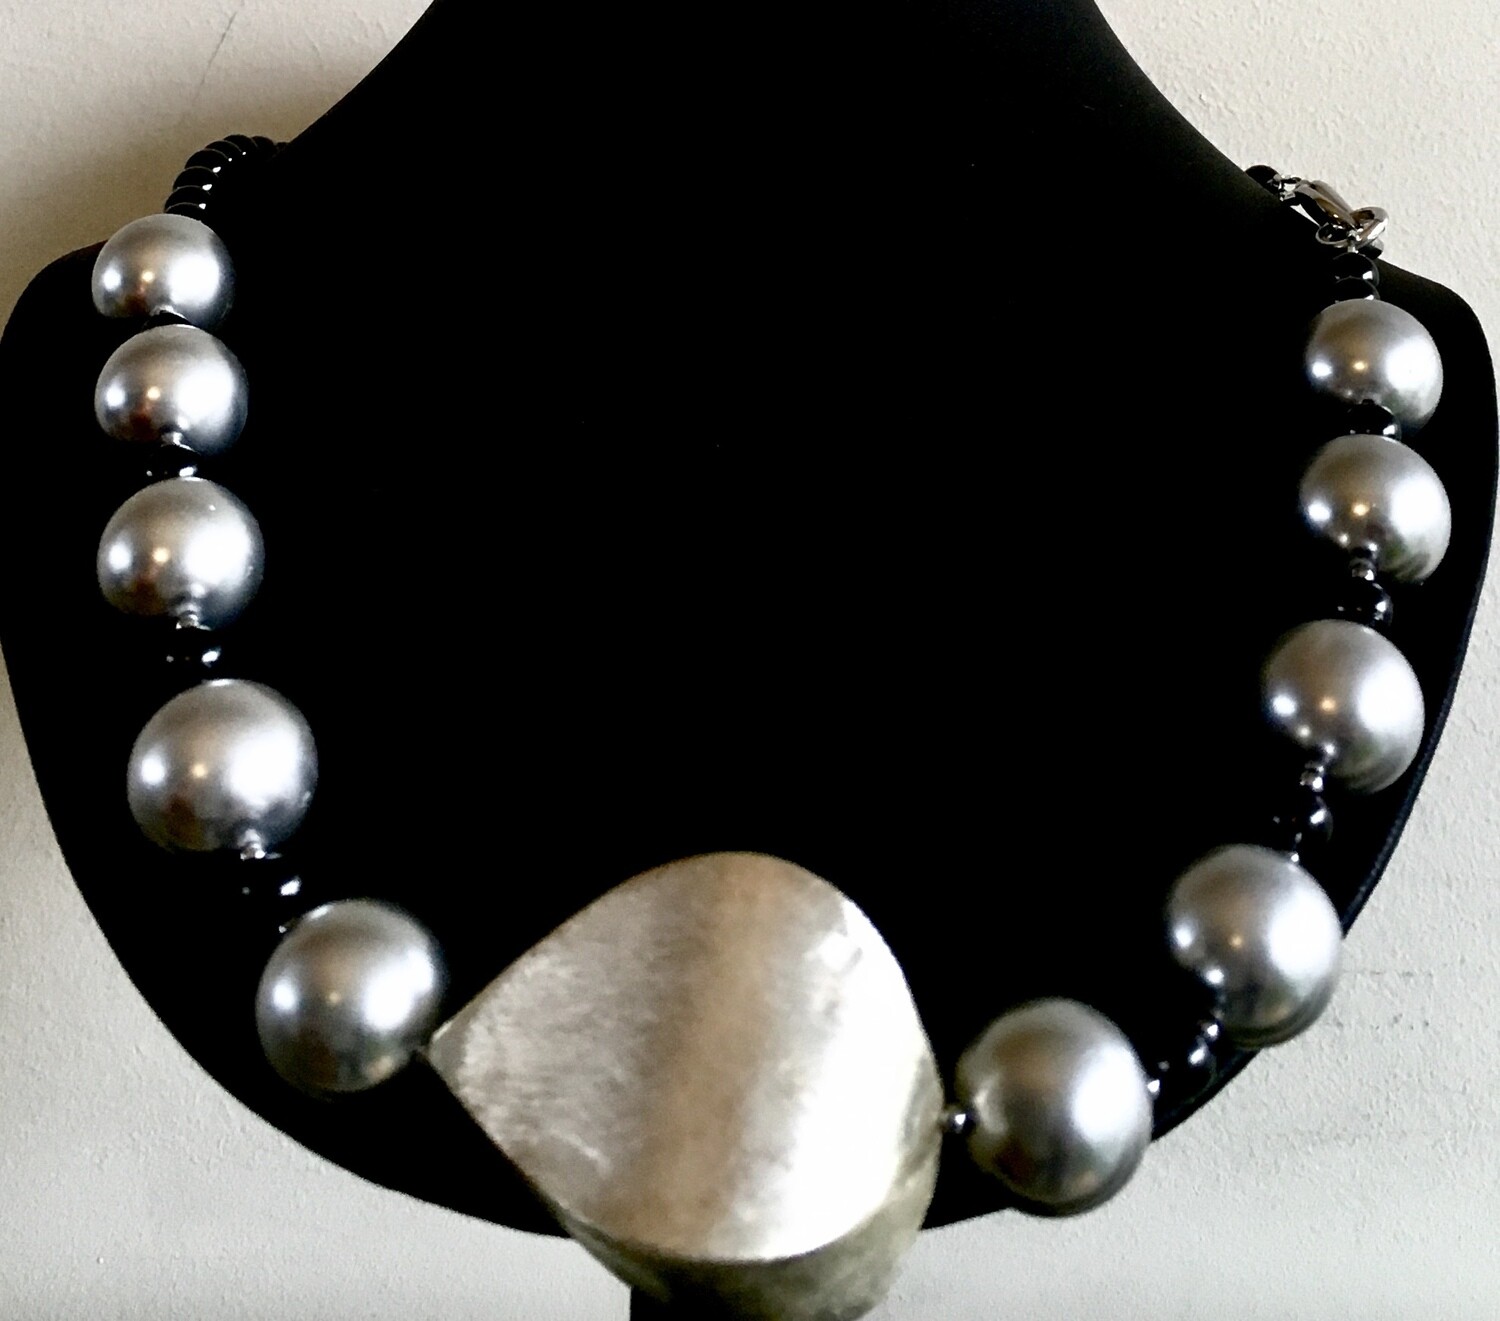 Silver/black necklace